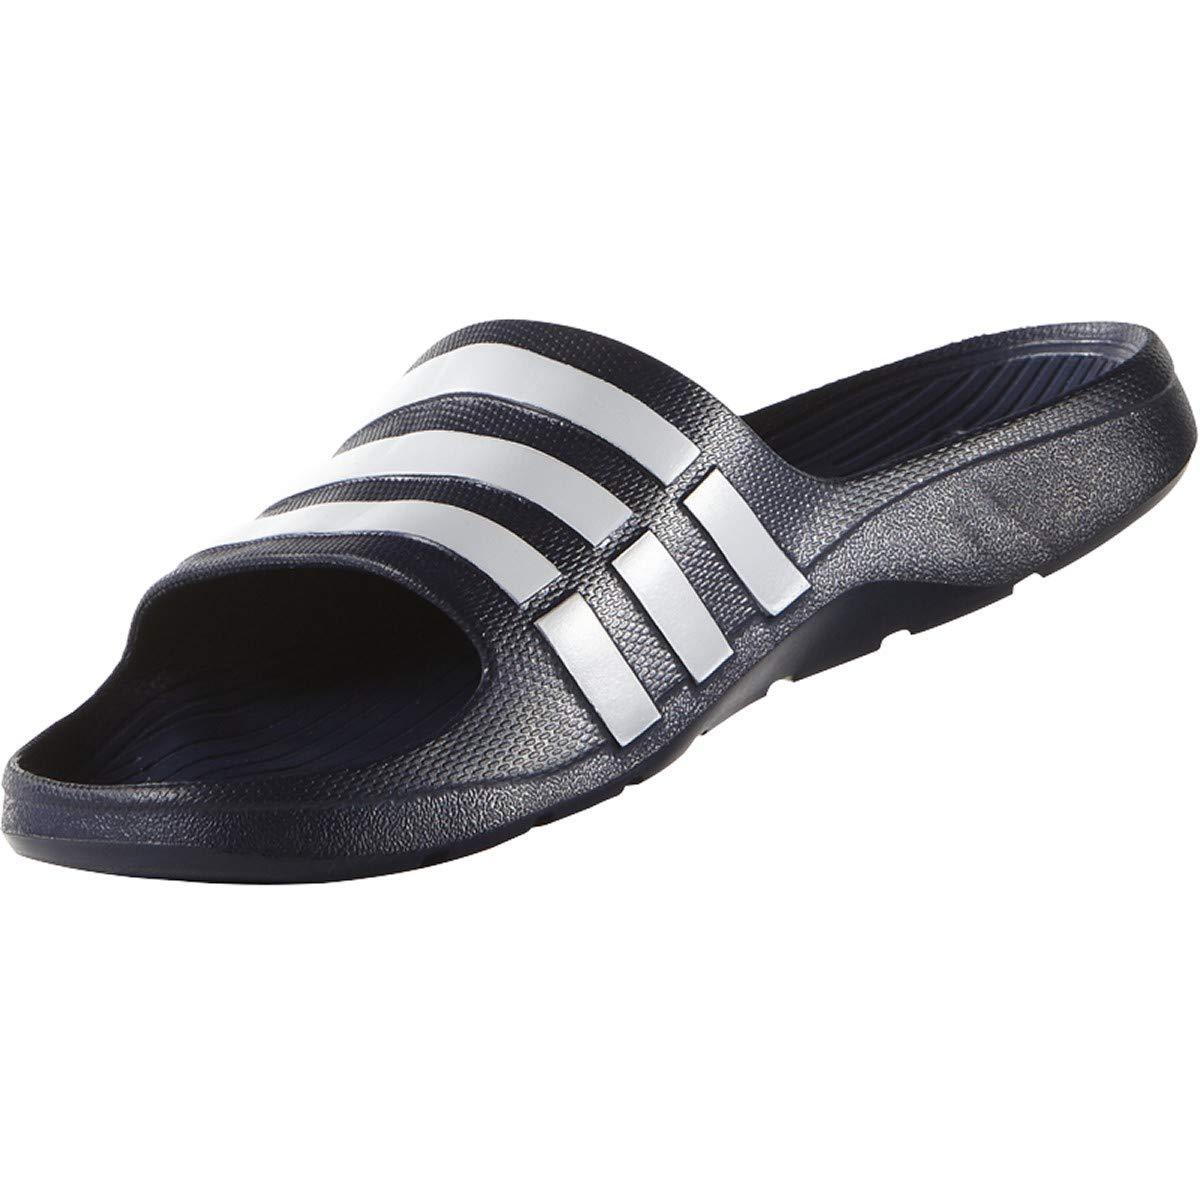 adidas Duramo Slide Sandal,dark Blue/white/dkblue,8 M Us in Black | Lyst